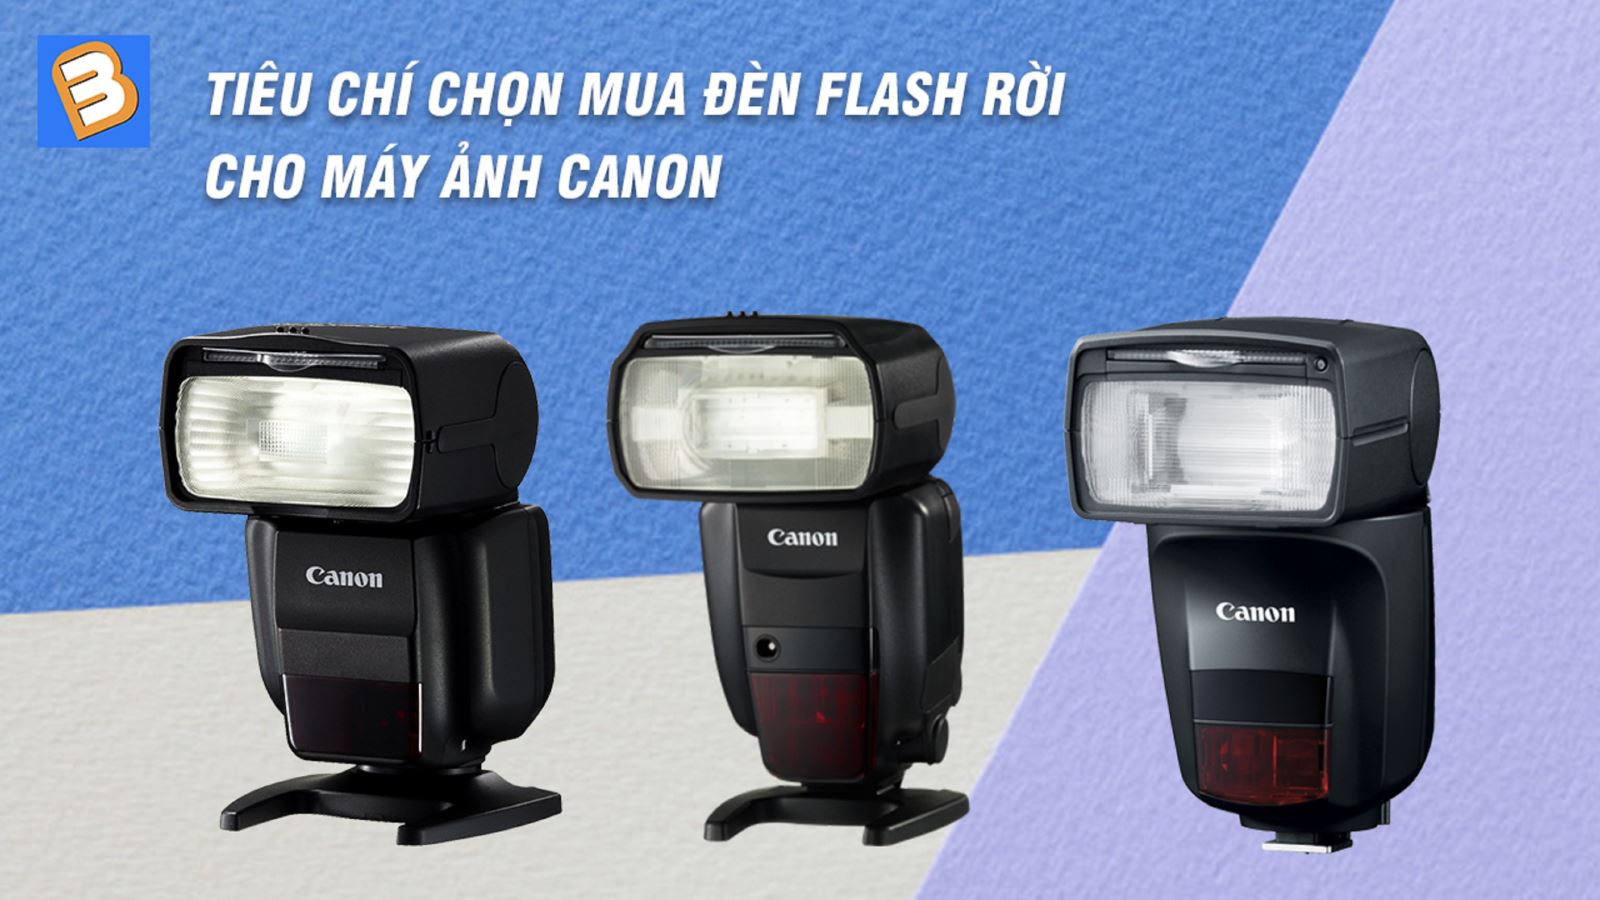 Tiêu chí chọn mua đèn Flash rời cho máy ảnh Canon